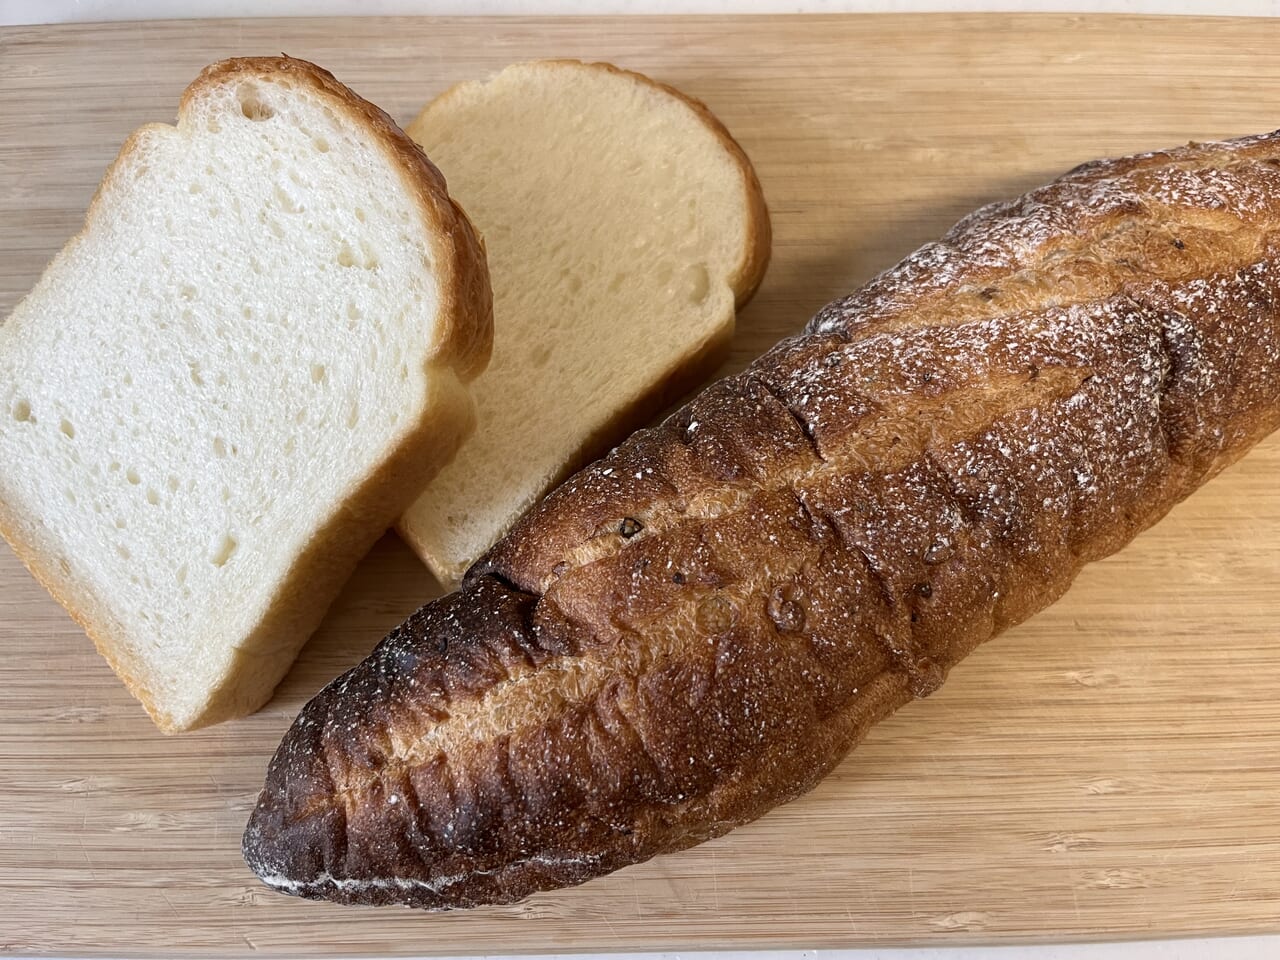 かぎしっぽの食パンと雑穀バケット